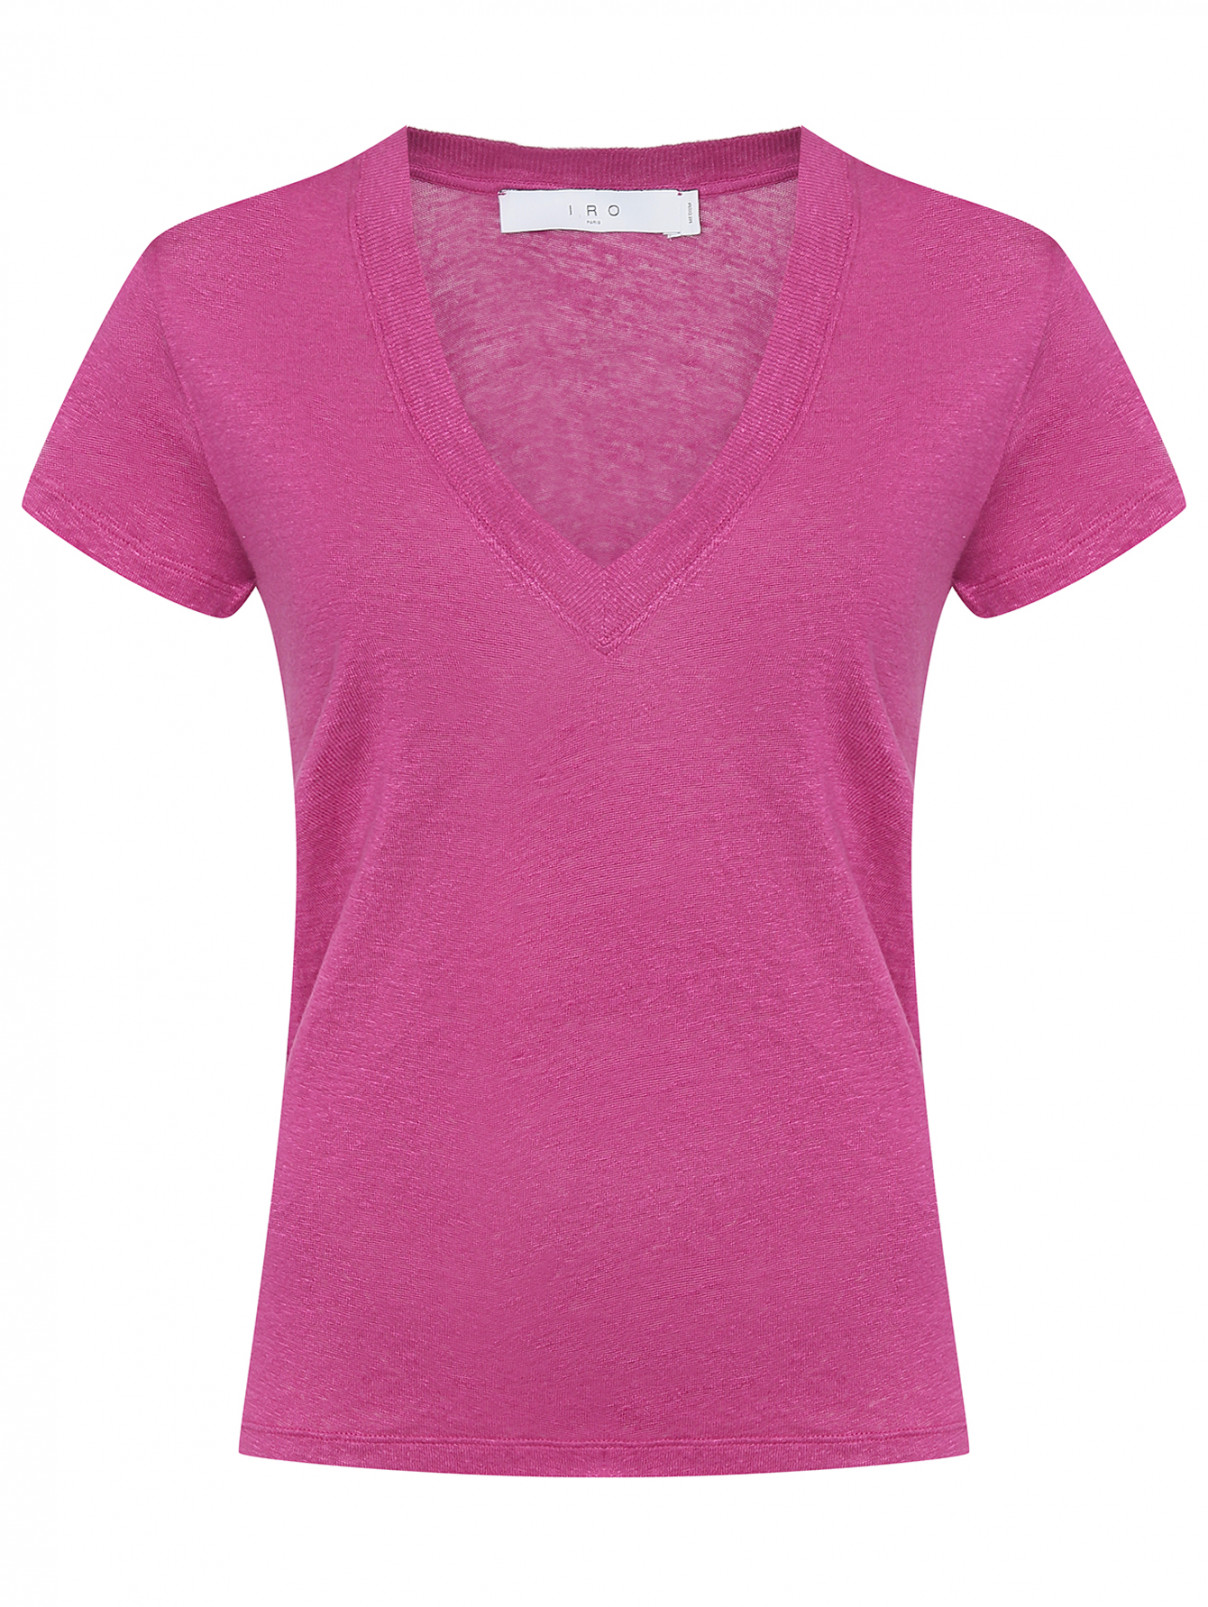 Однотонная футболка с V-образным вырезом Iro  –  Общий вид  – Цвет:  Фиолетовый